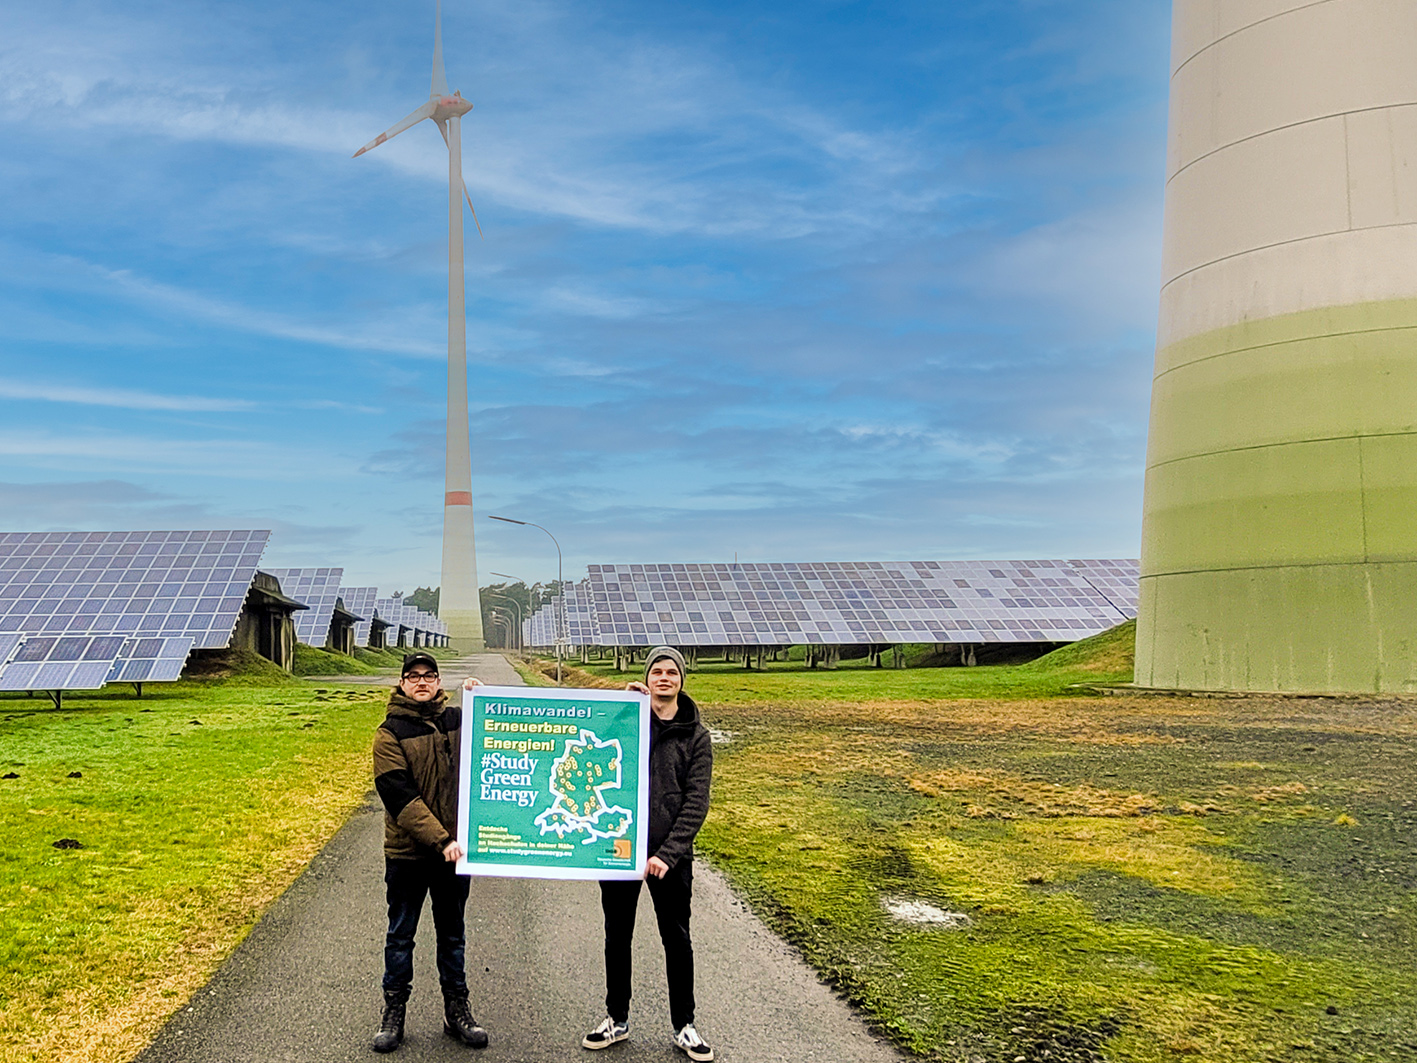 Erneuerbare Energien studieren: Am 27. Januar findet eine Infoveranstaltung des Netzwerks #StudyGreenEnergy statt, die Studierende auf das Thema aufmerksam machen möchte. Foto: FH Münster/FB EGU